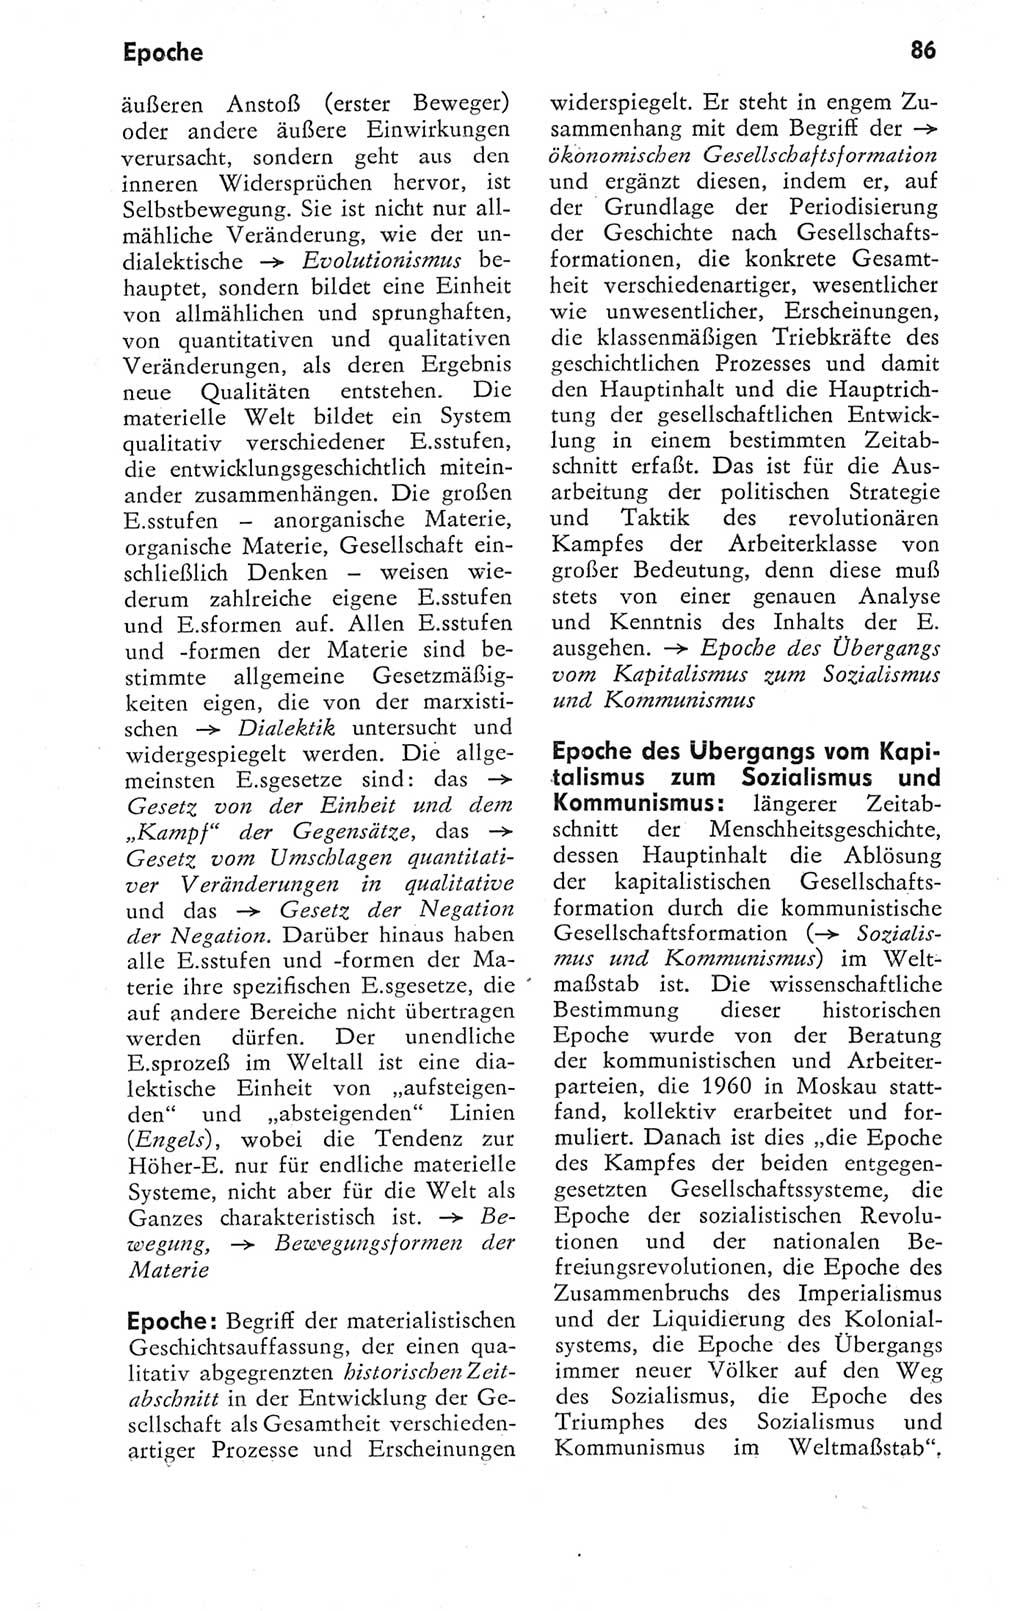 Kleines Wörterbuch der marxistisch-leninistischen Philosophie [Deutsche Demokratische Republik (DDR)] 1974, Seite 86 (Kl. Wb. ML Phil. DDR 1974, S. 86)